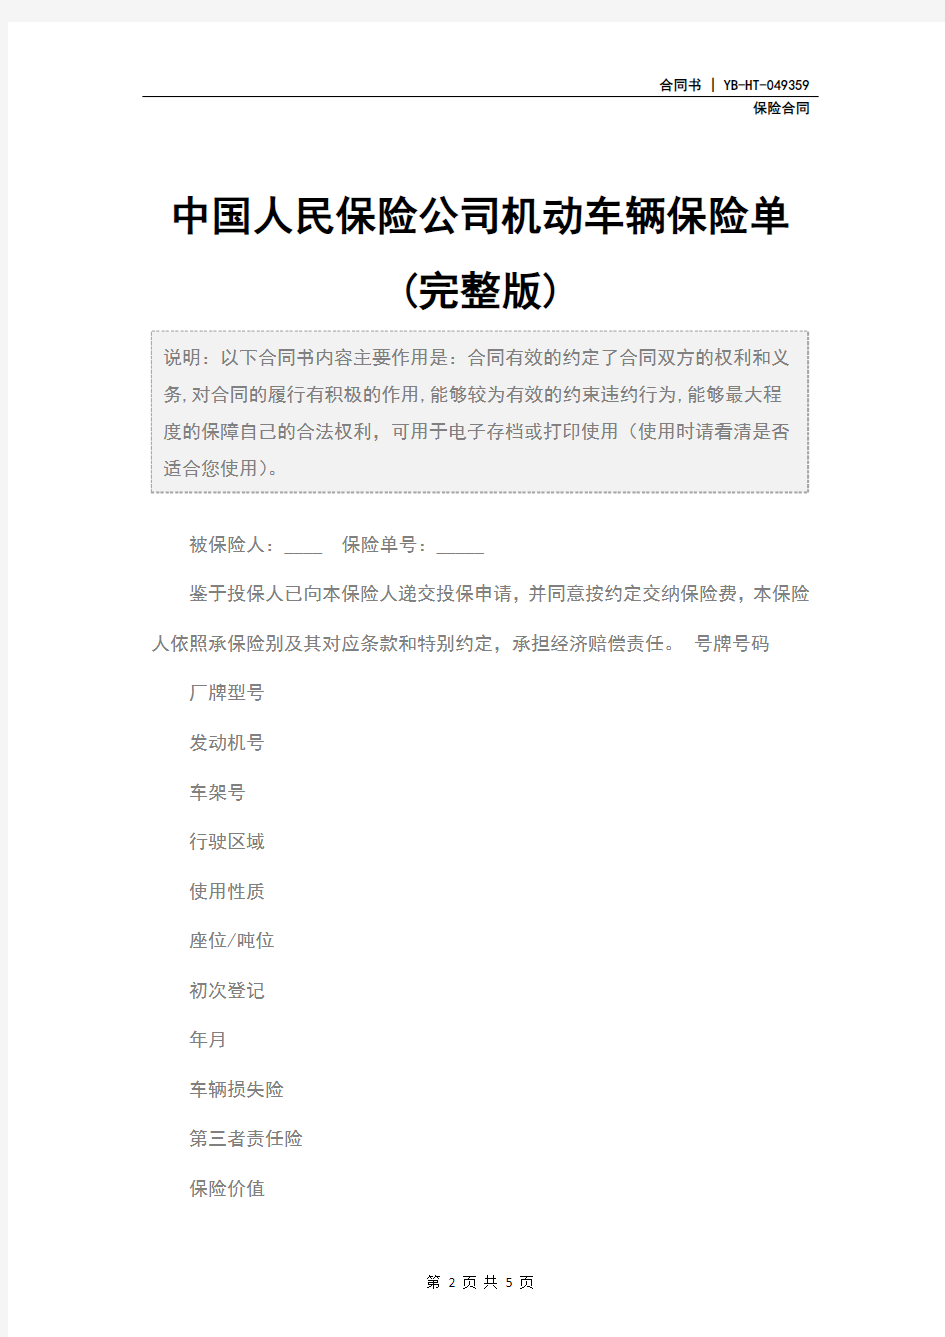 中国人民保险公司机动车辆保险单(完整版)